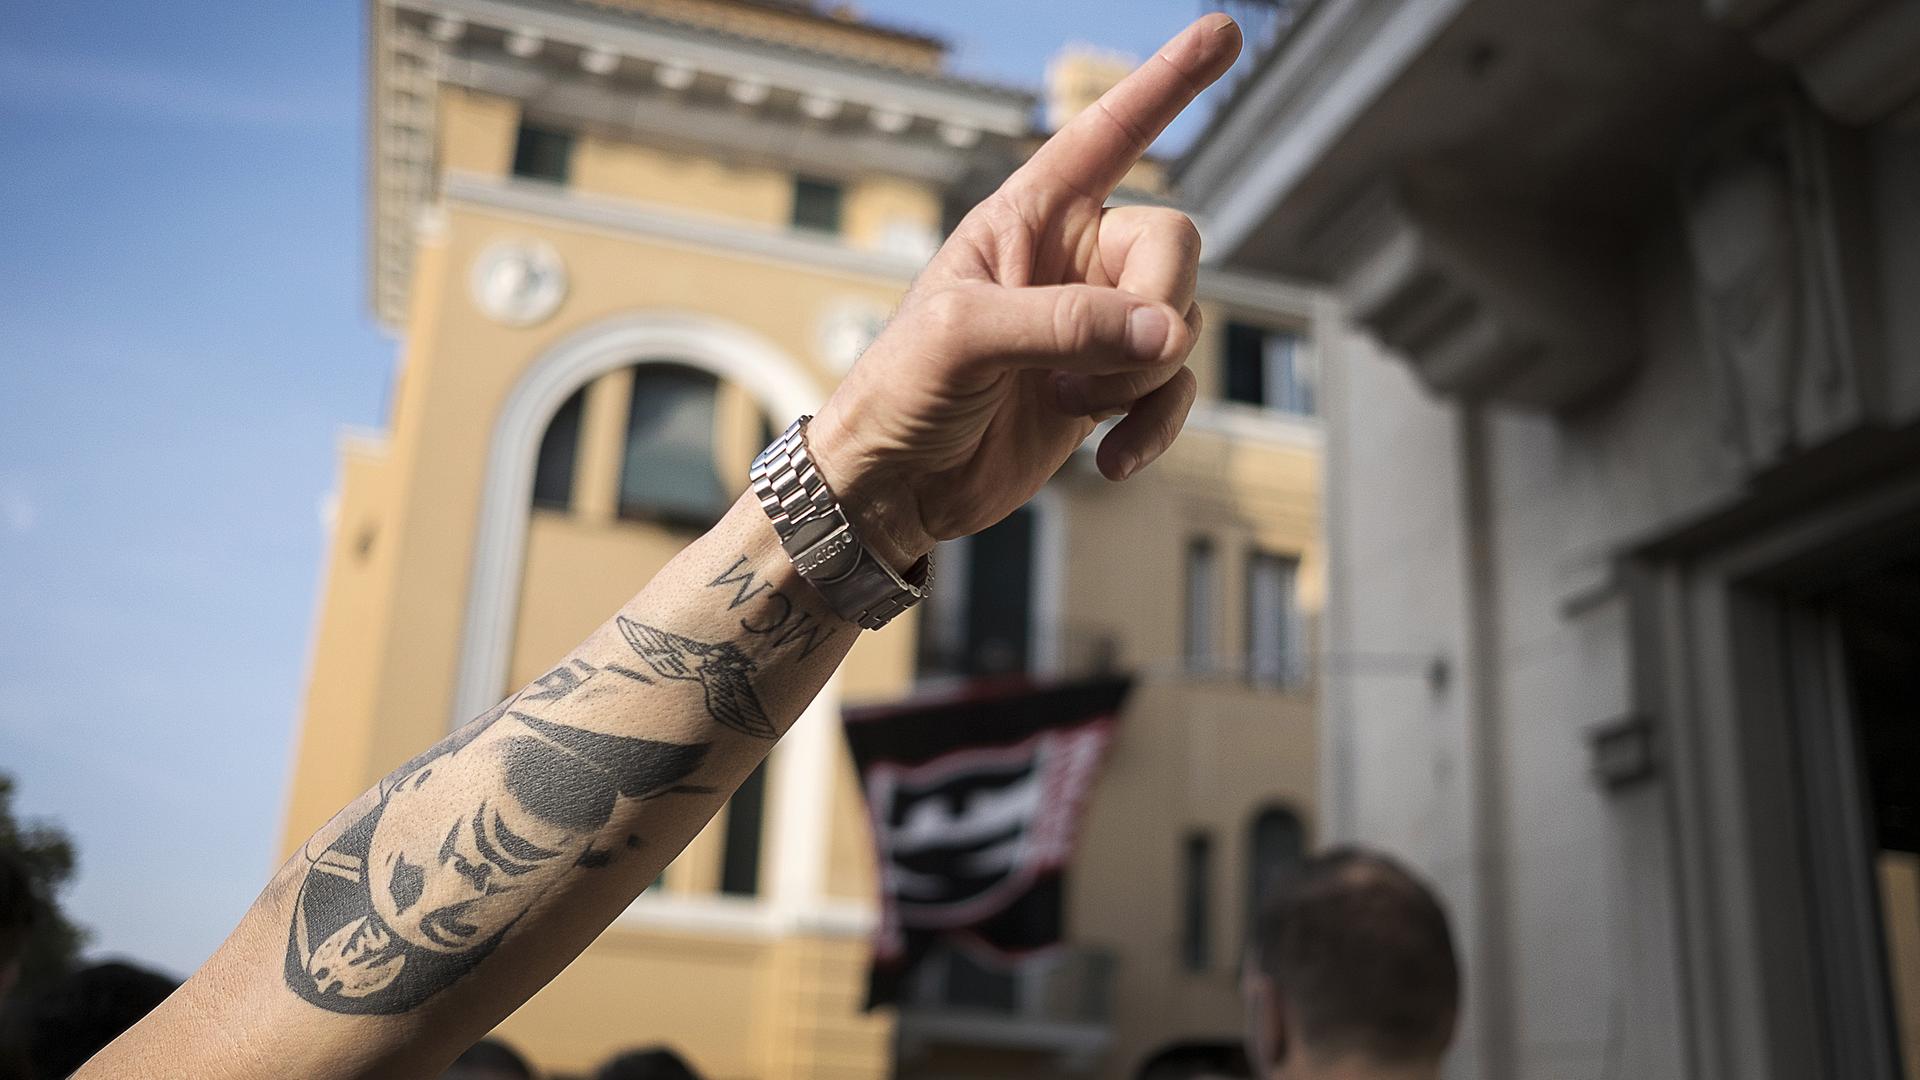 Aufnahme eines Armes mit erhobenem Zeigefinger und einem Tattoo mit dem Gesicht von Benito Mussolini.